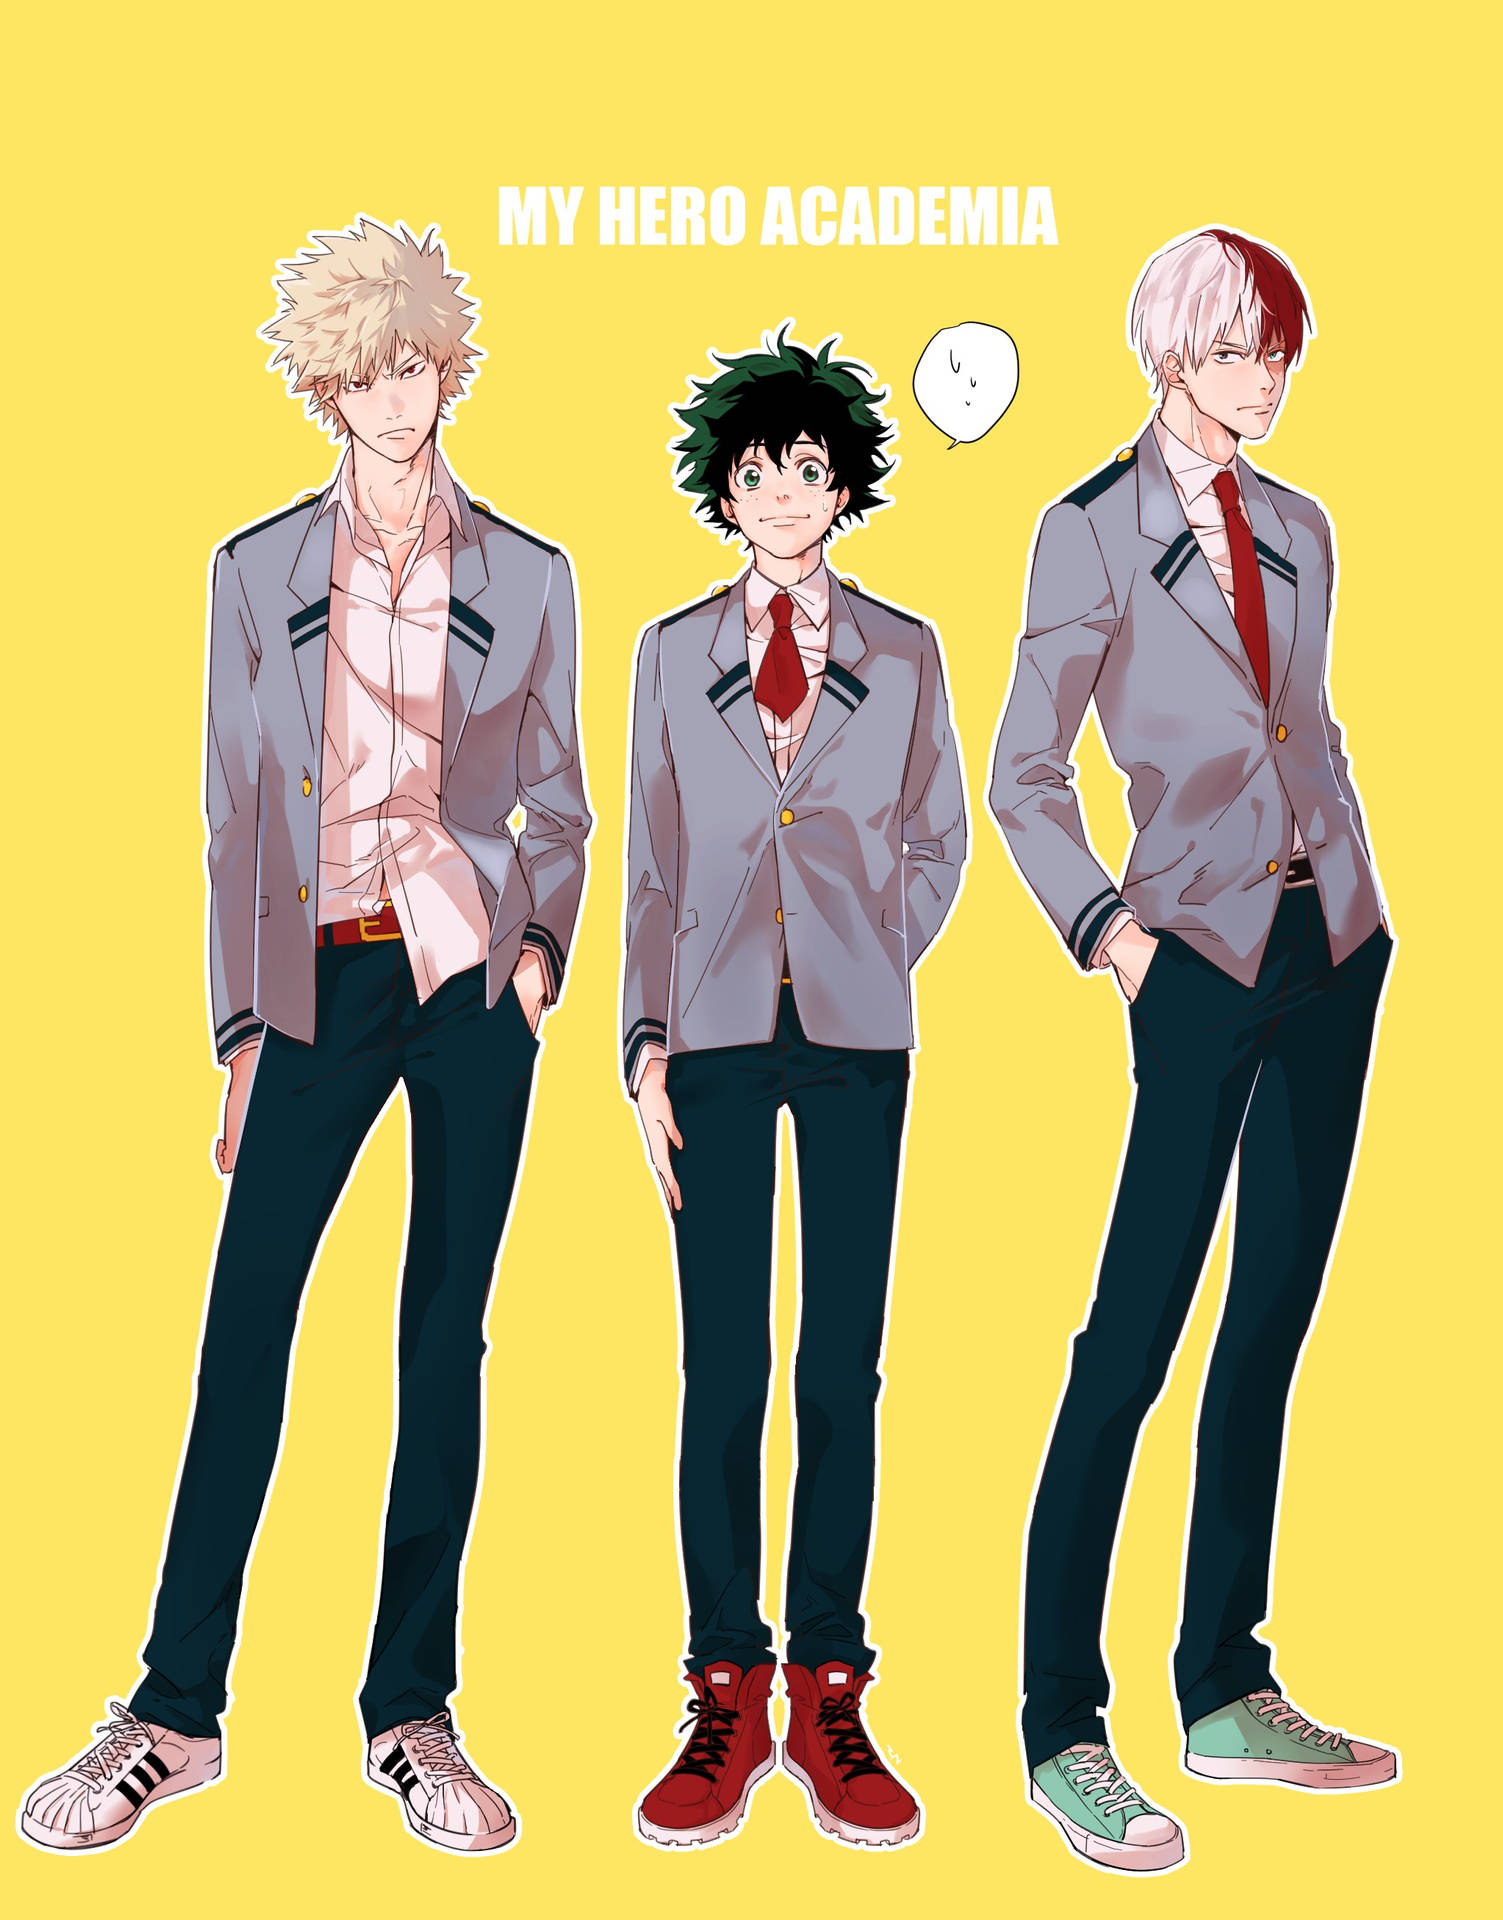 Deku, Todoroki, and Bakugou - heroes of the popular manga and anime series My Hero Academia. Wallpaper